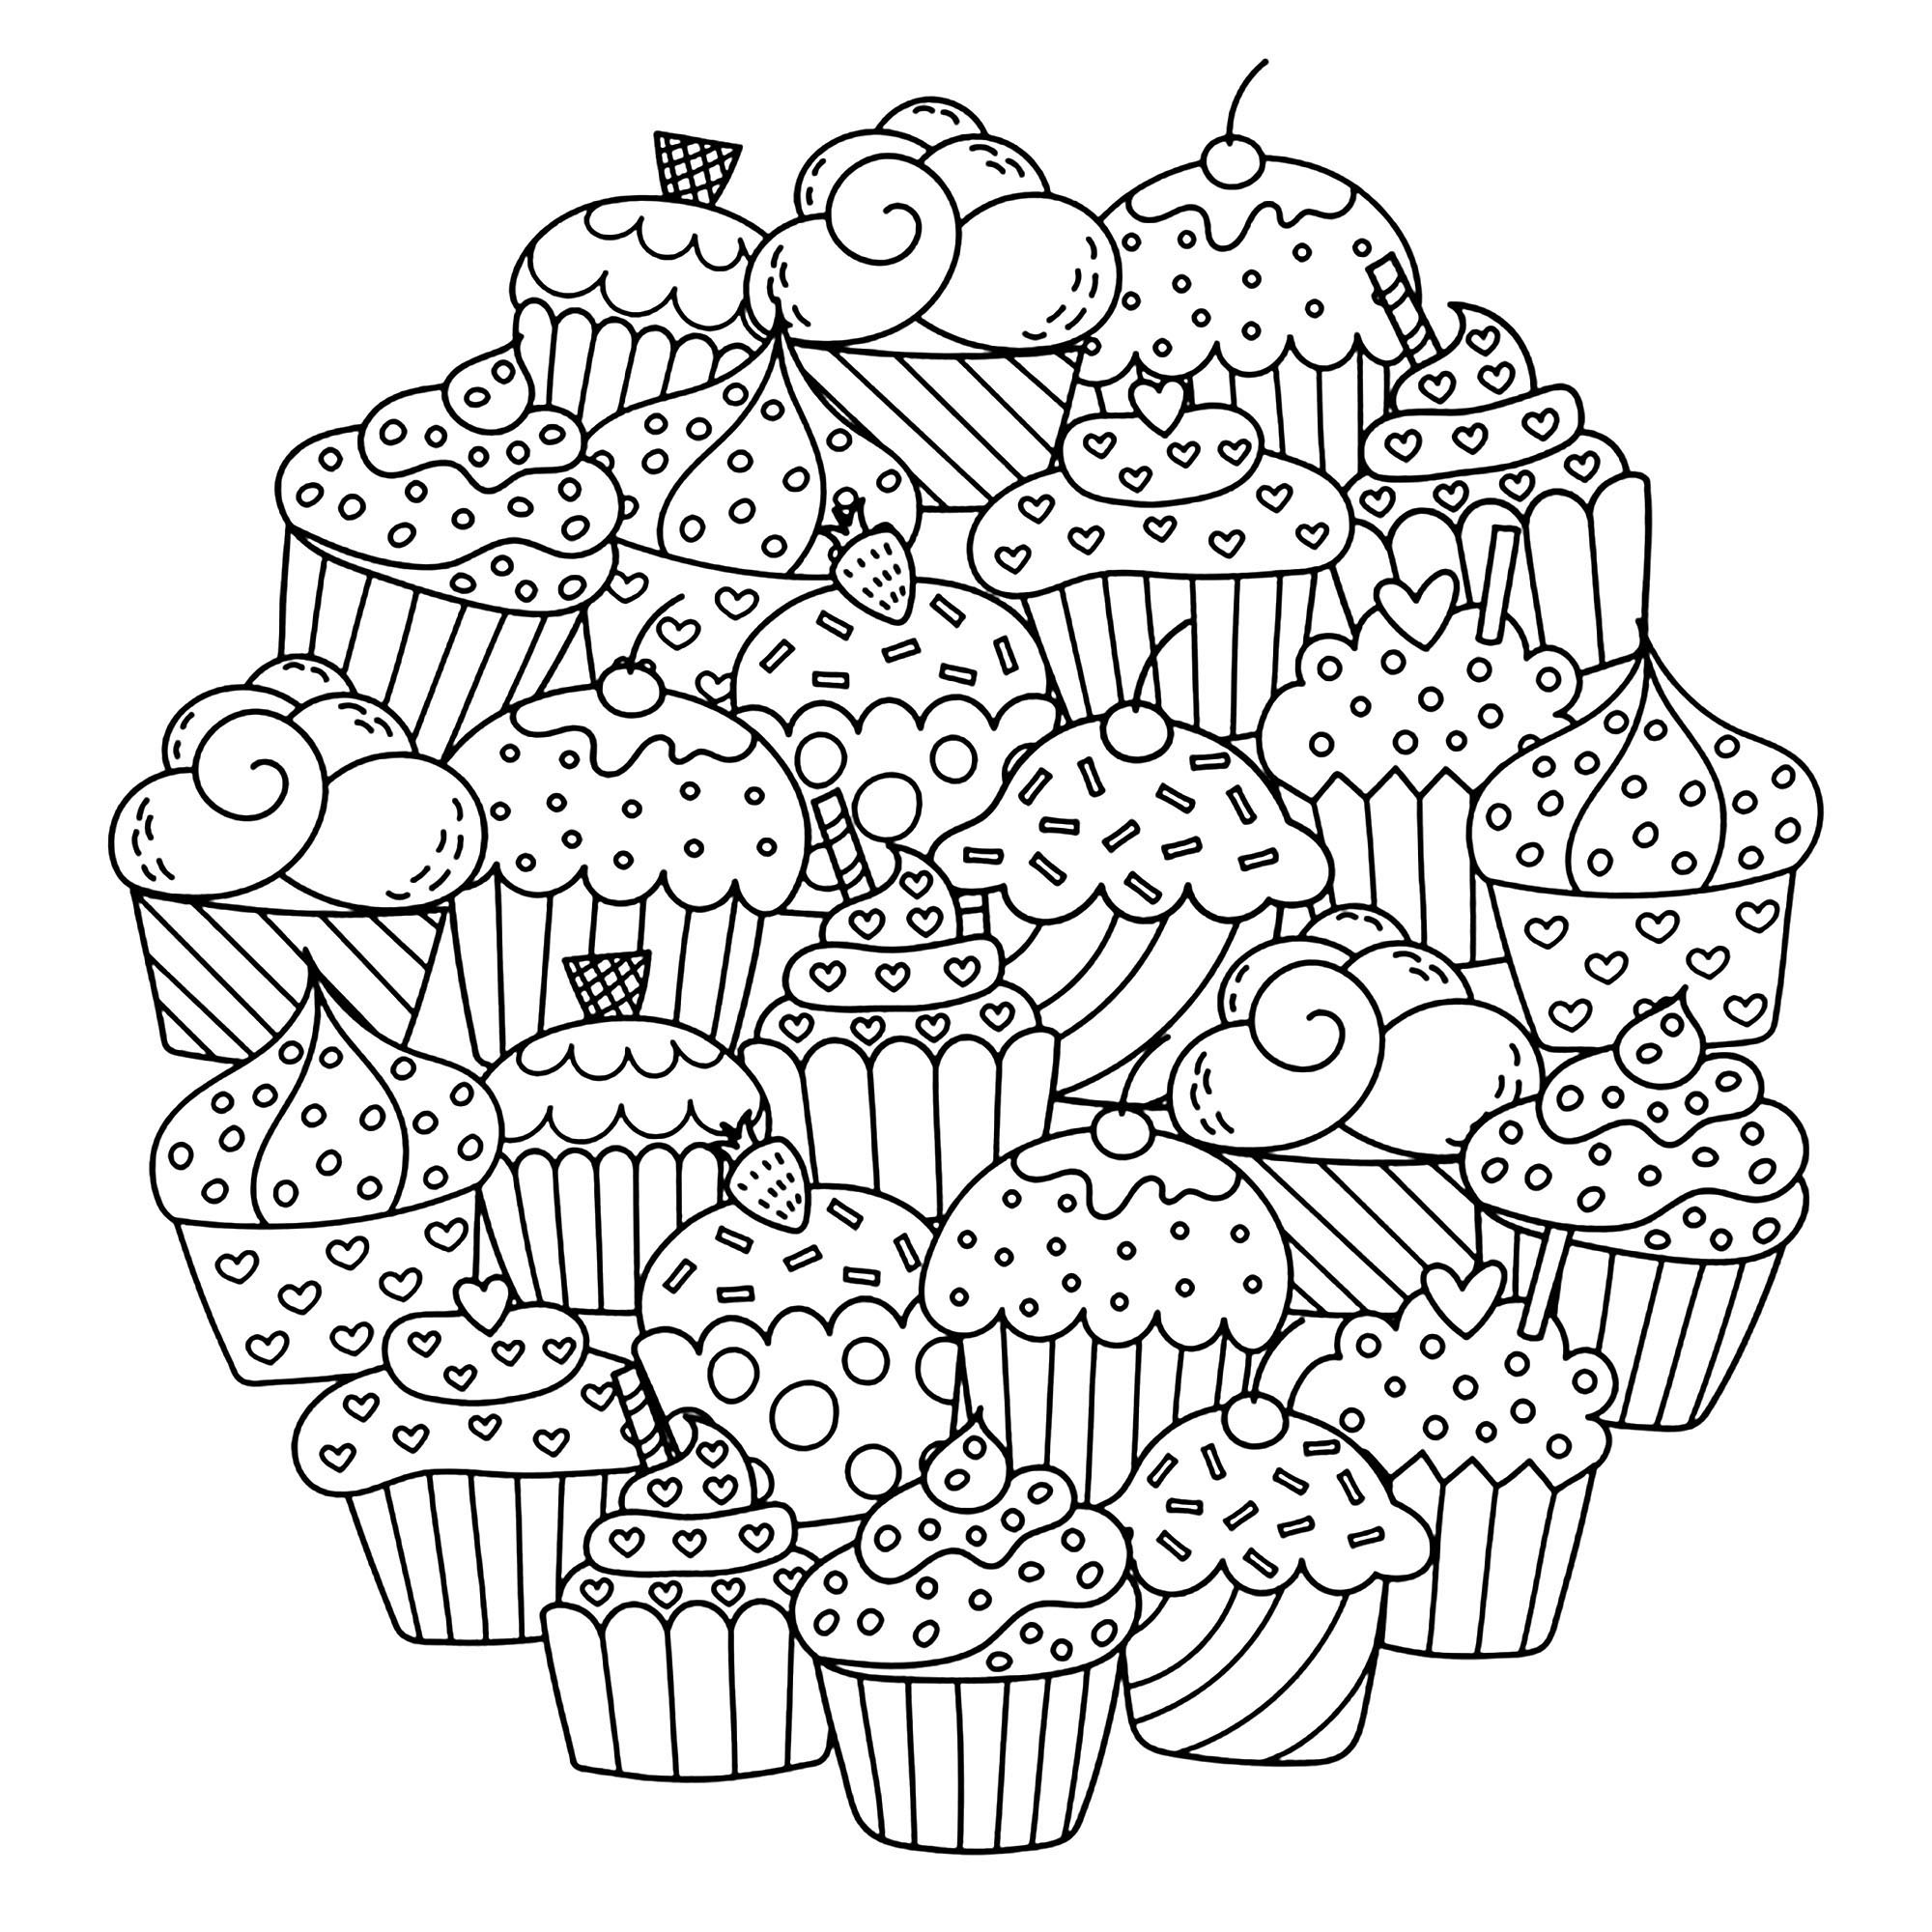 Ein hübsches Mandala aus vielen Cupcakes ... Machen Sie sie mithilfe von Filzstiften, Bleistiften oder Pinseln zu etwas ganz Besonderem, Quelle : 123rf   Künstler : Gulnara Sabirova